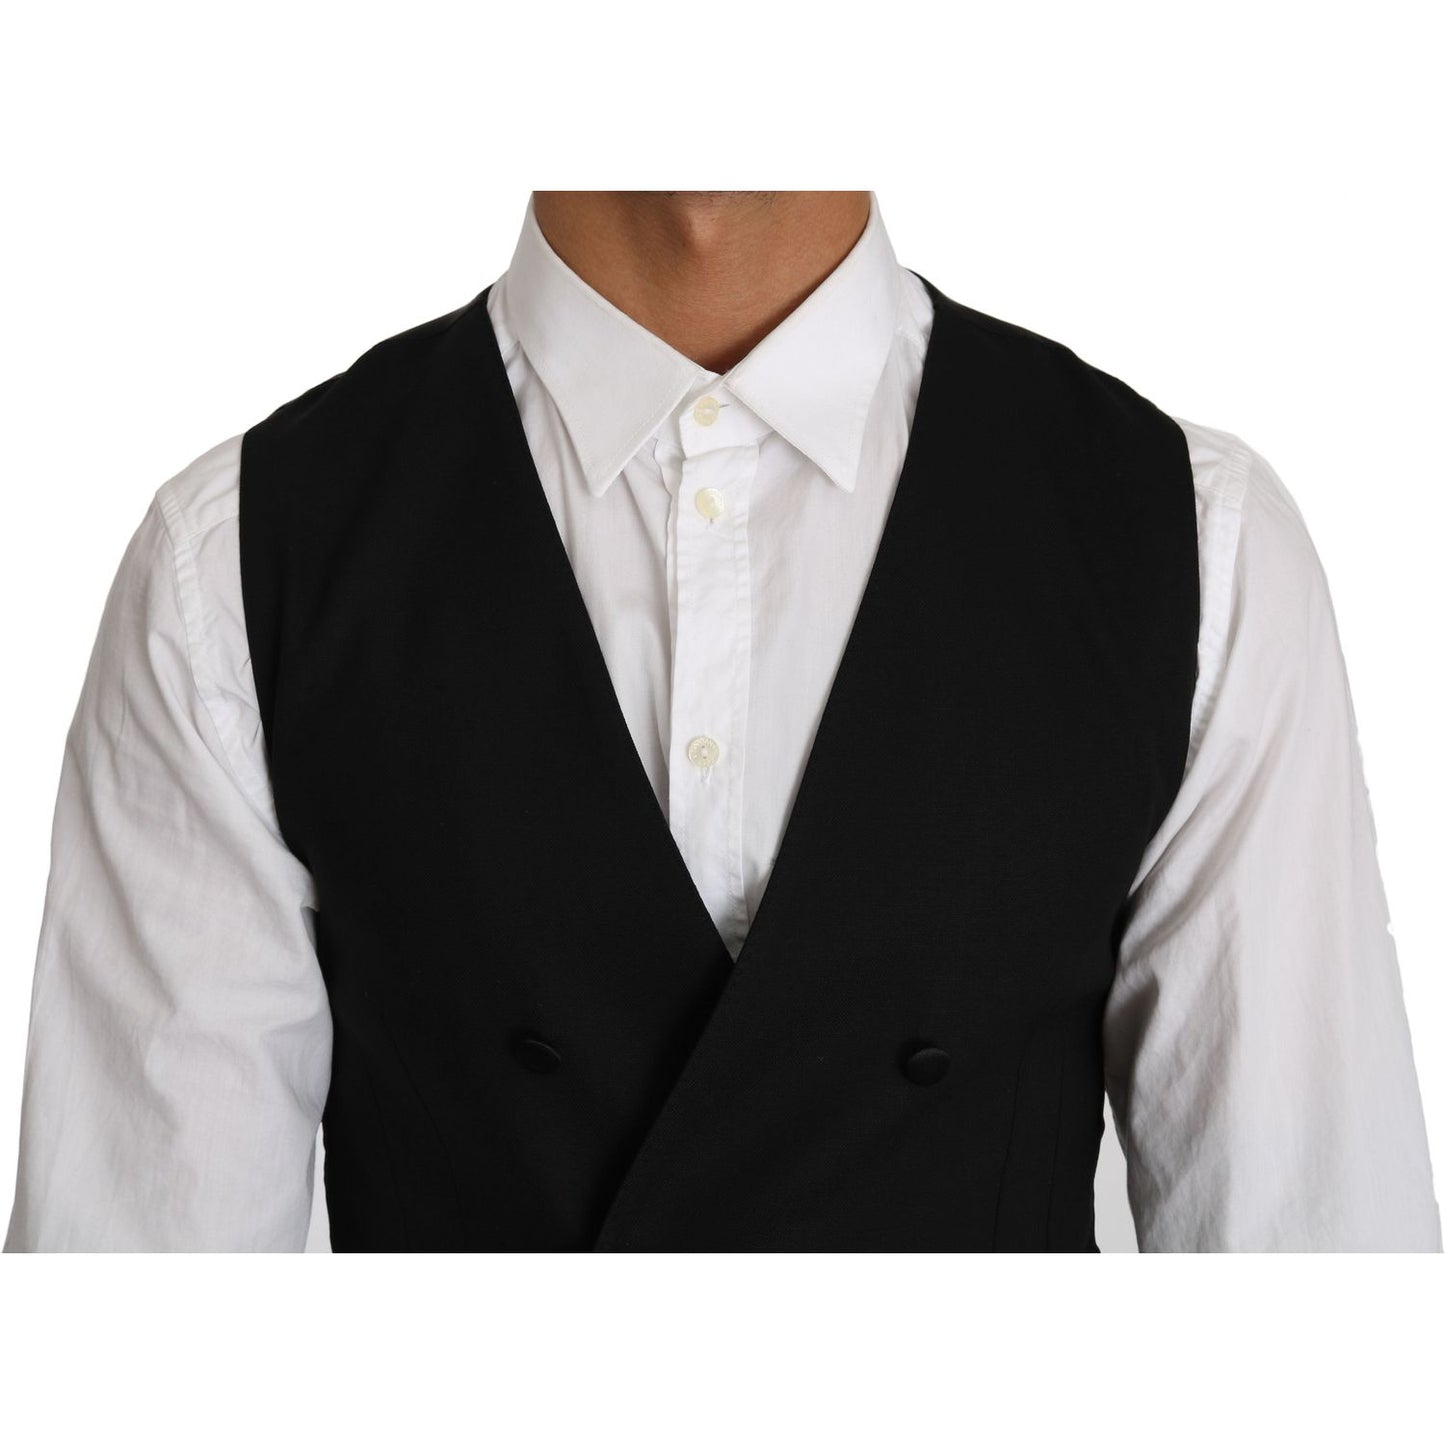 Dolce & Gabbana Sleek Double Breasted Slim Fit Wool Vest gray-wool-double-breasted-waistcoat-vest IMG_1464.jpg